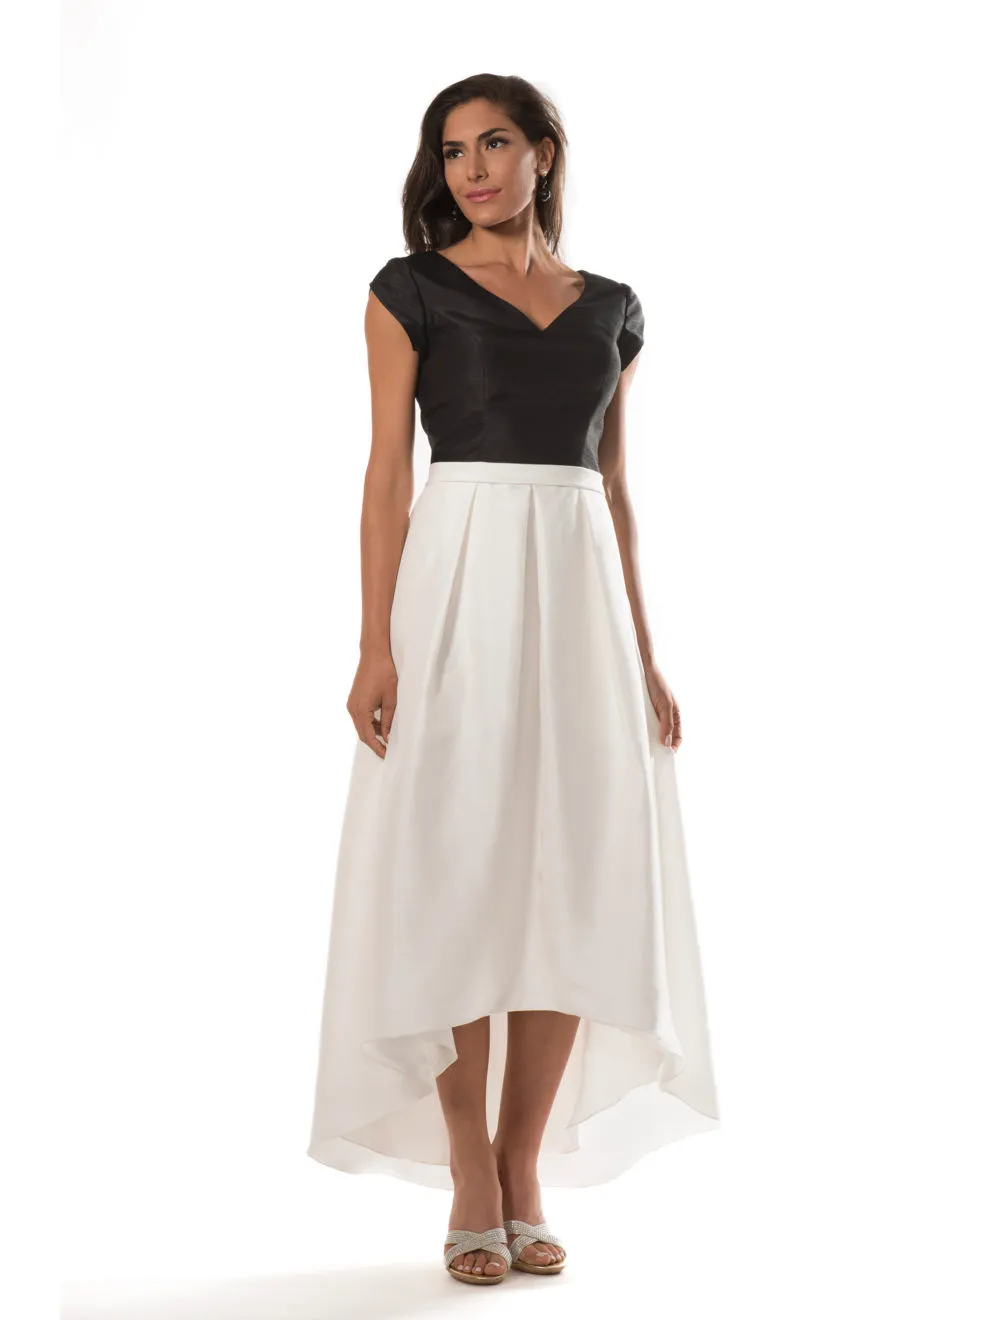 Siyah ve Beyaz Yüksek Düşük Mütevazı Gelinlik Modelleri Kollu Vintage Tafta Ülkesi Basit Düğün Konukları Elbiseler Yeni Custom Made